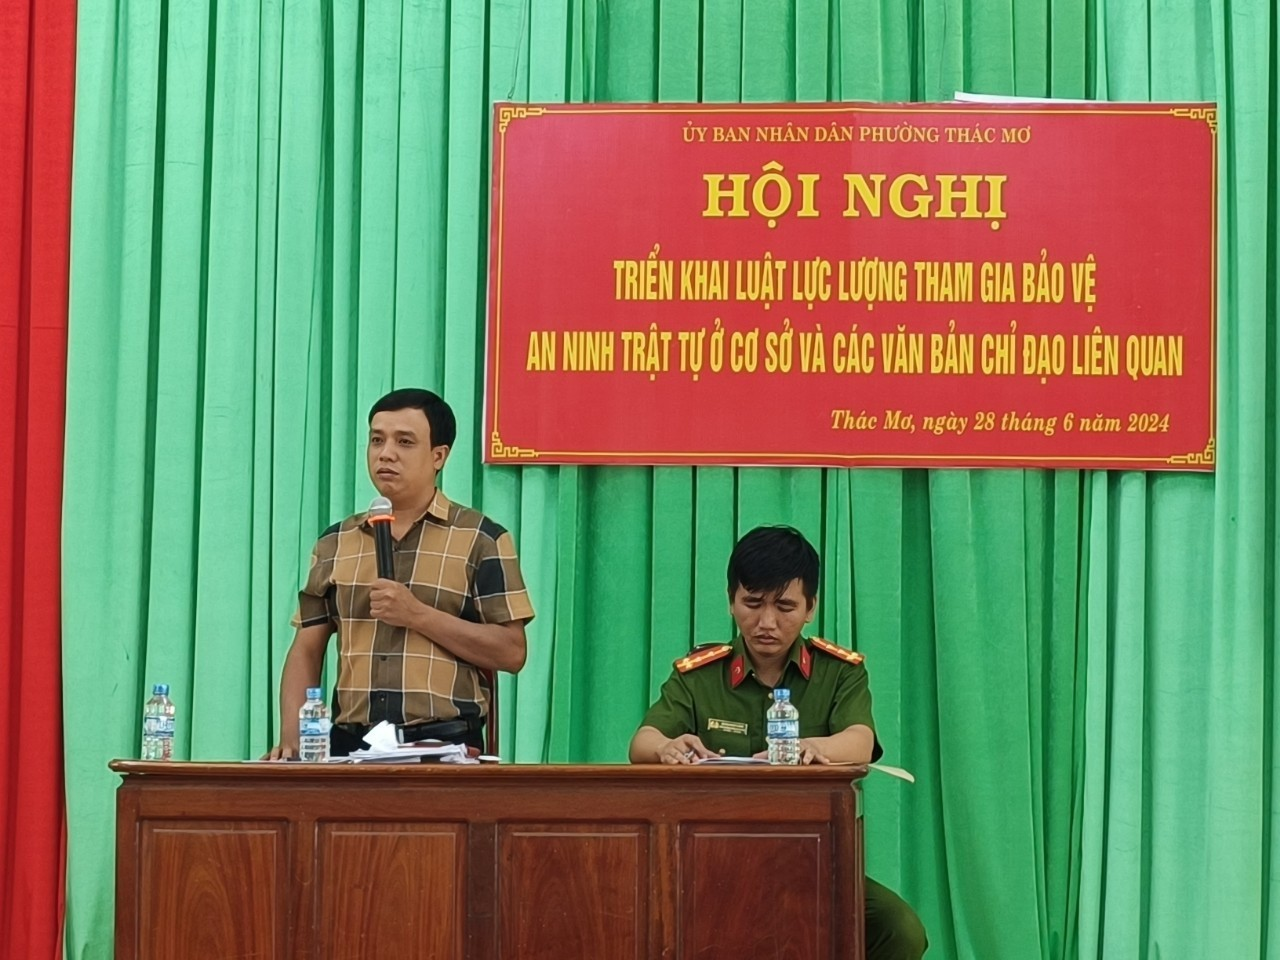 Phường Thác Mơ, thị xã Phước Long tổ chức Hội nghị triển khai Luật lực lượng tham gia bảo vệ ANTT ở cơ sở và các văn bản chỉ đạo liên quan